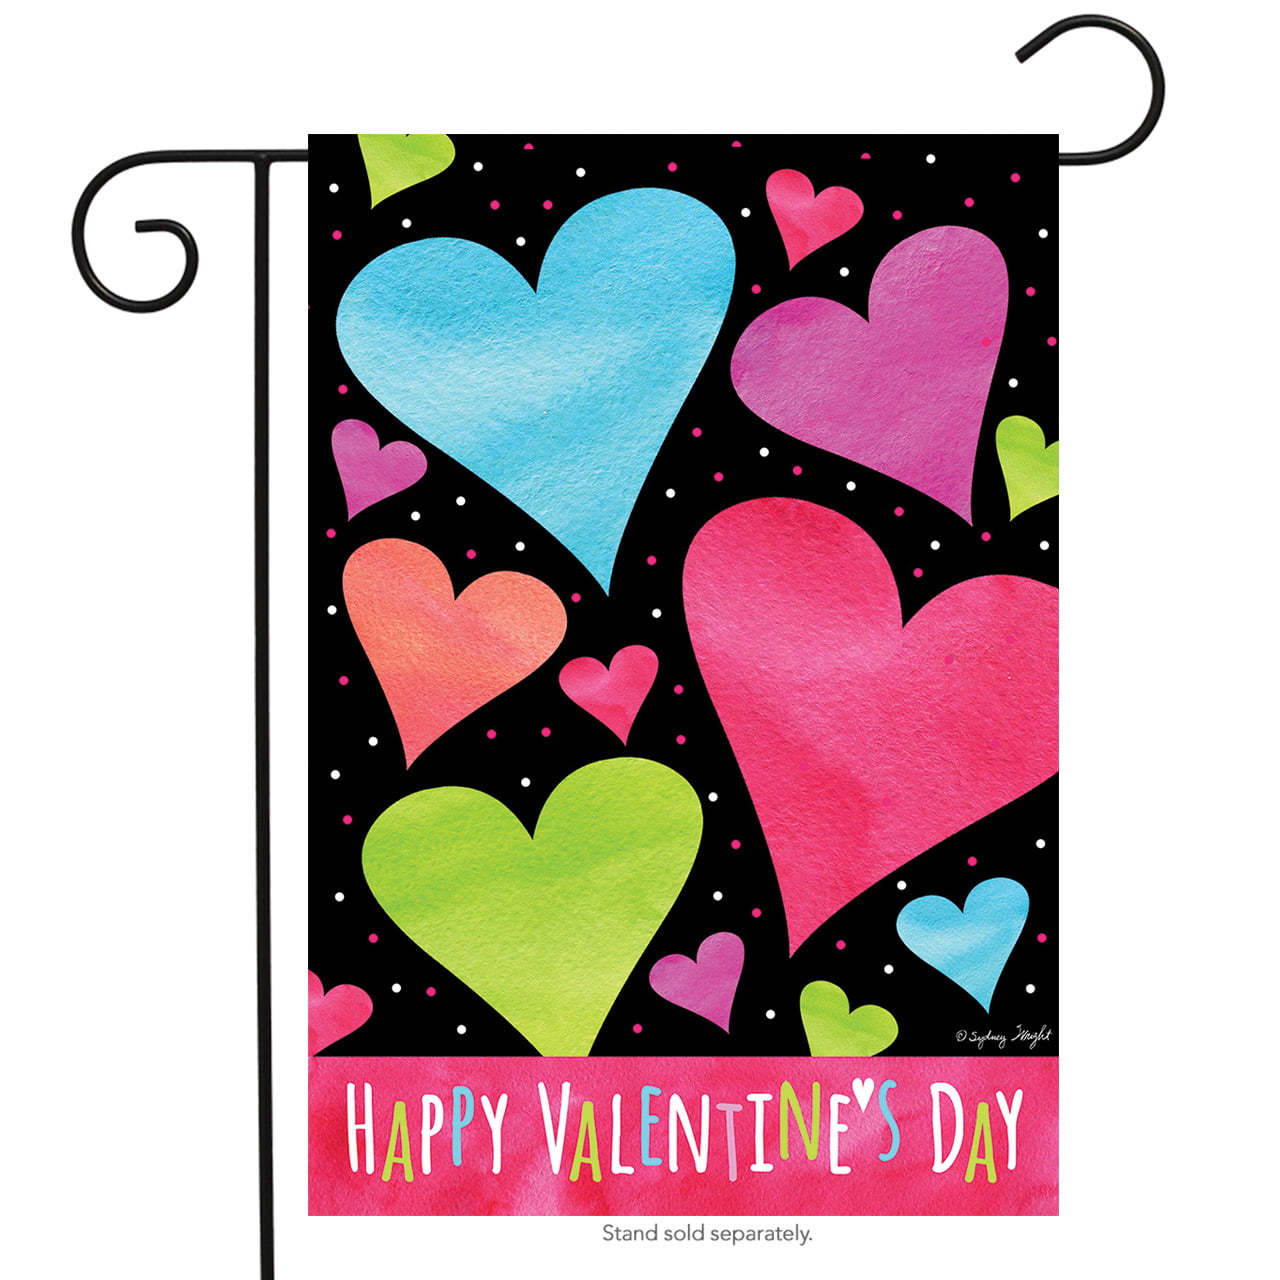 Toland Home Garden Garden Hearts 12.5 x 18 Inch Decorative Love Valentine Day Welcome Garden Flag